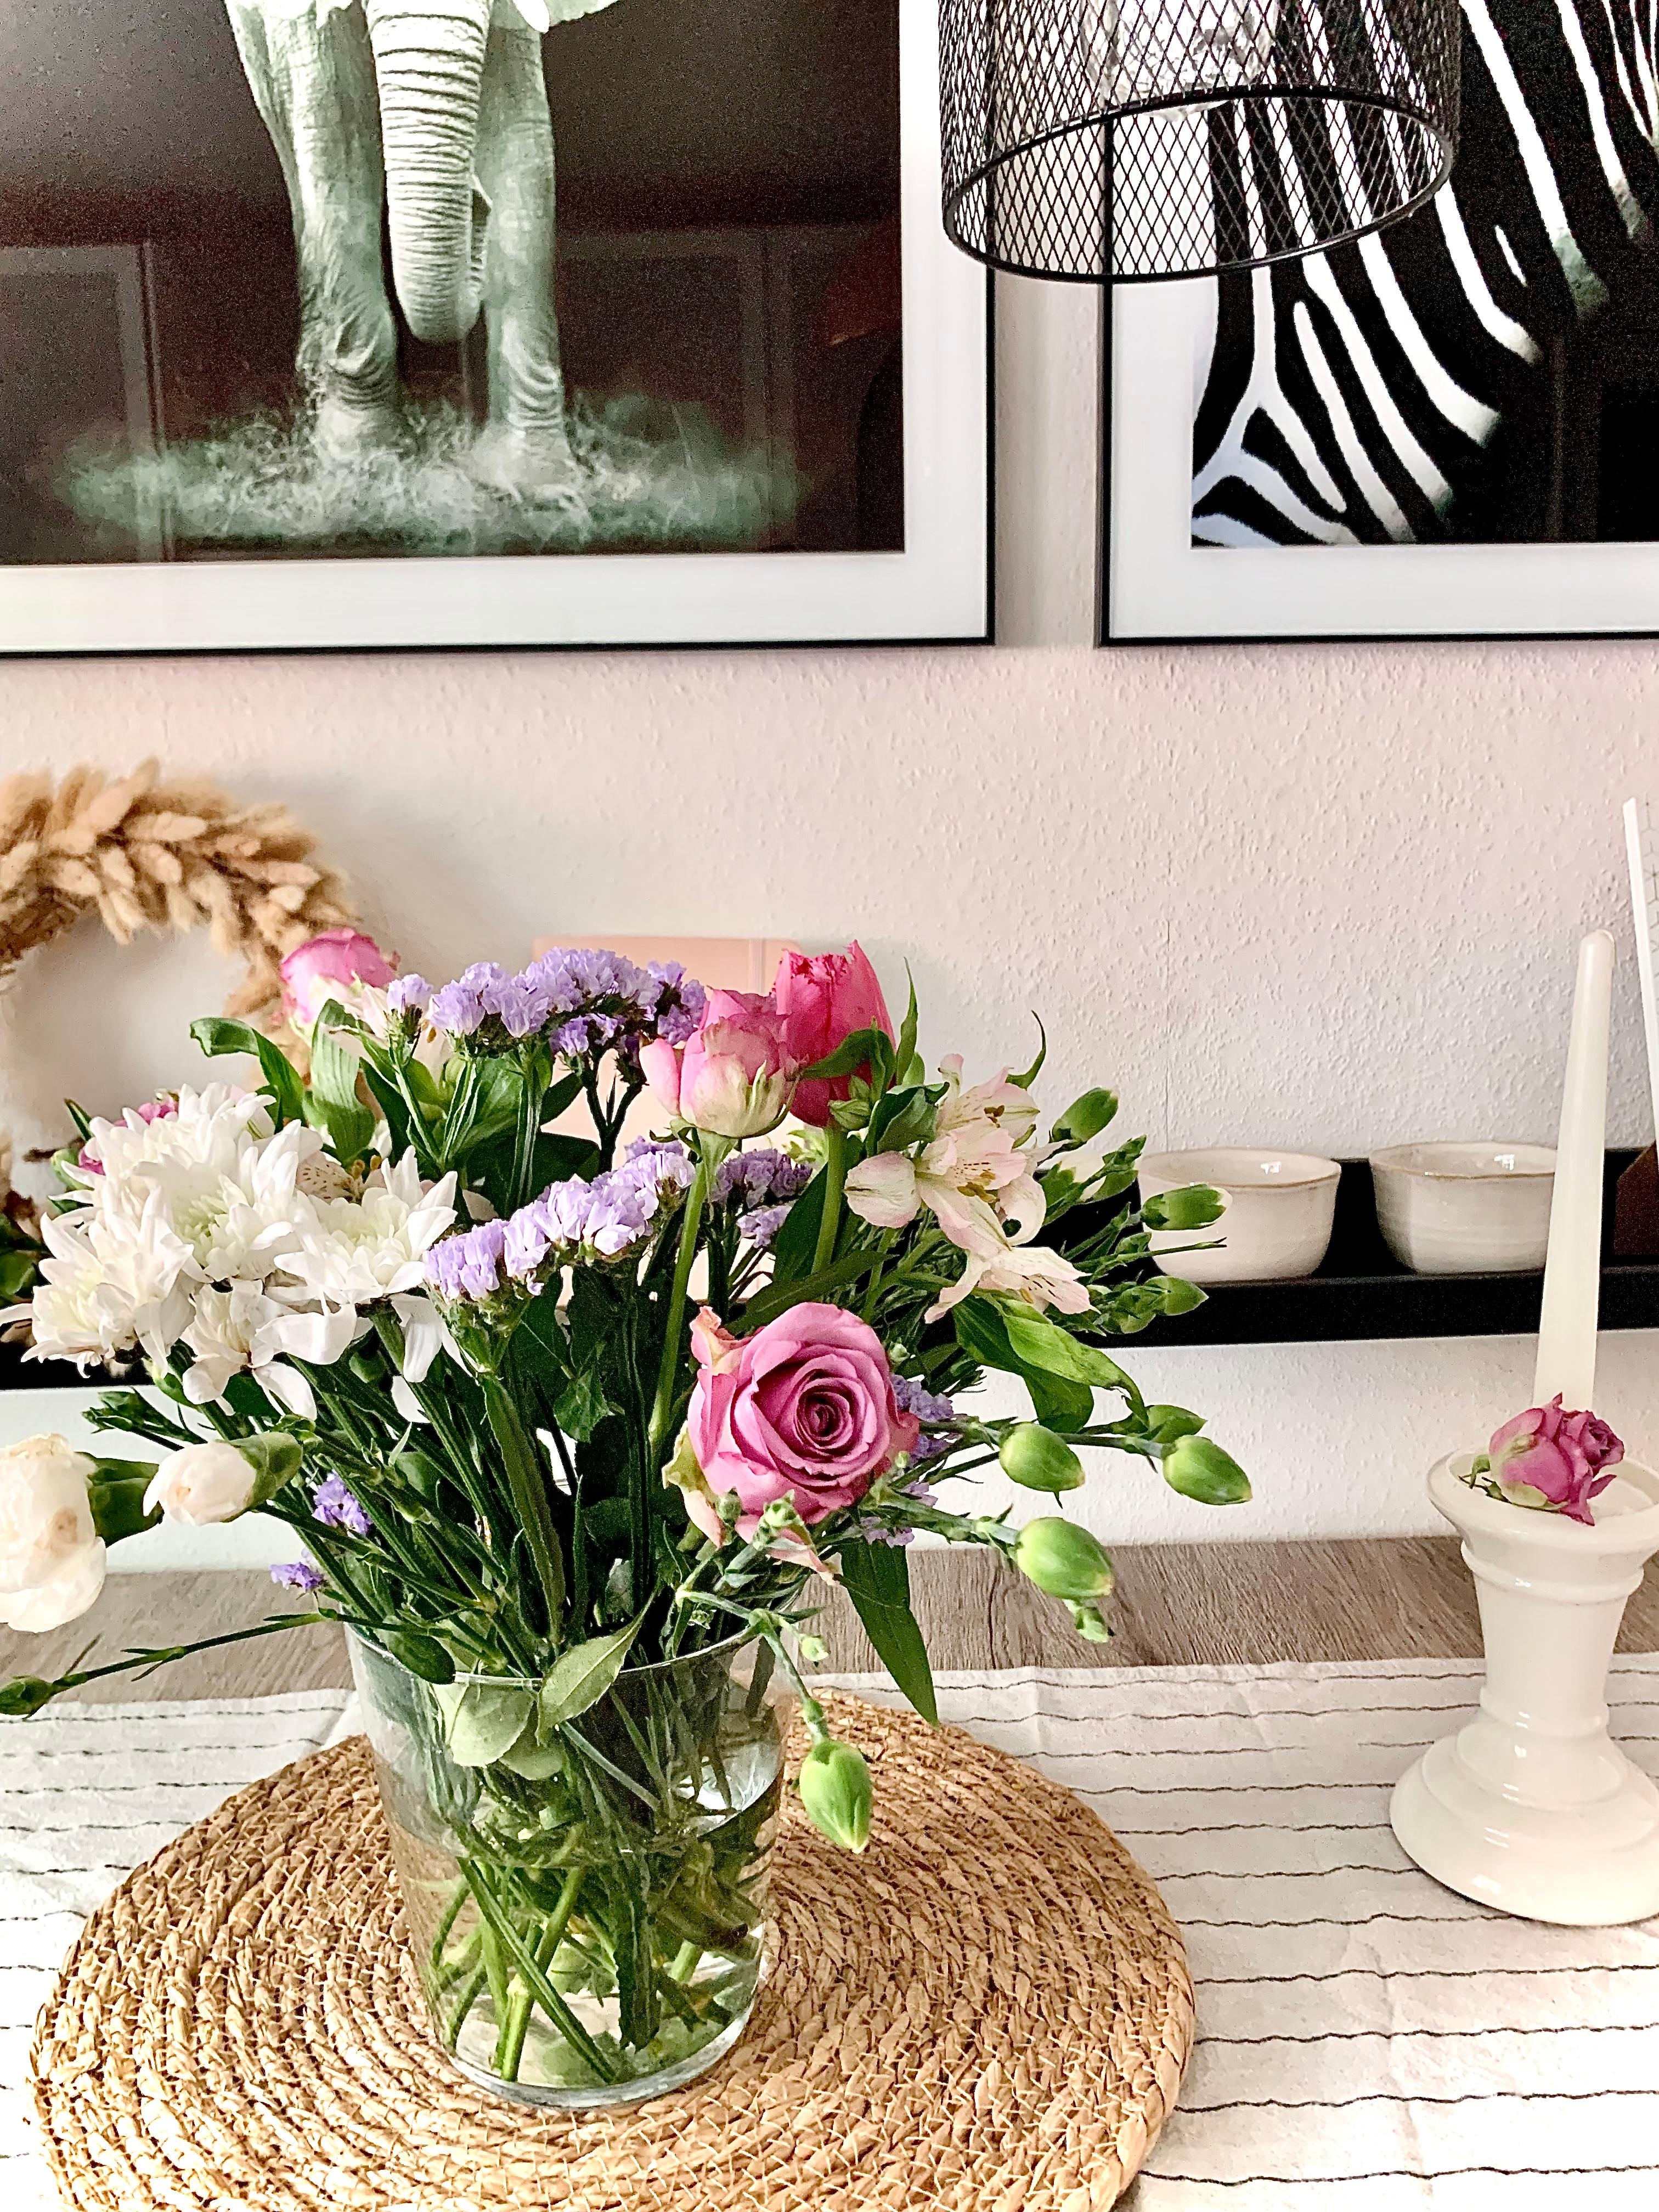 Blumenstrauß 🤍 Ich lieb‘s!

#blumen #frühling #esstischdeko #wandbild #wandboard #kerze #kranz #tischset #lampe 